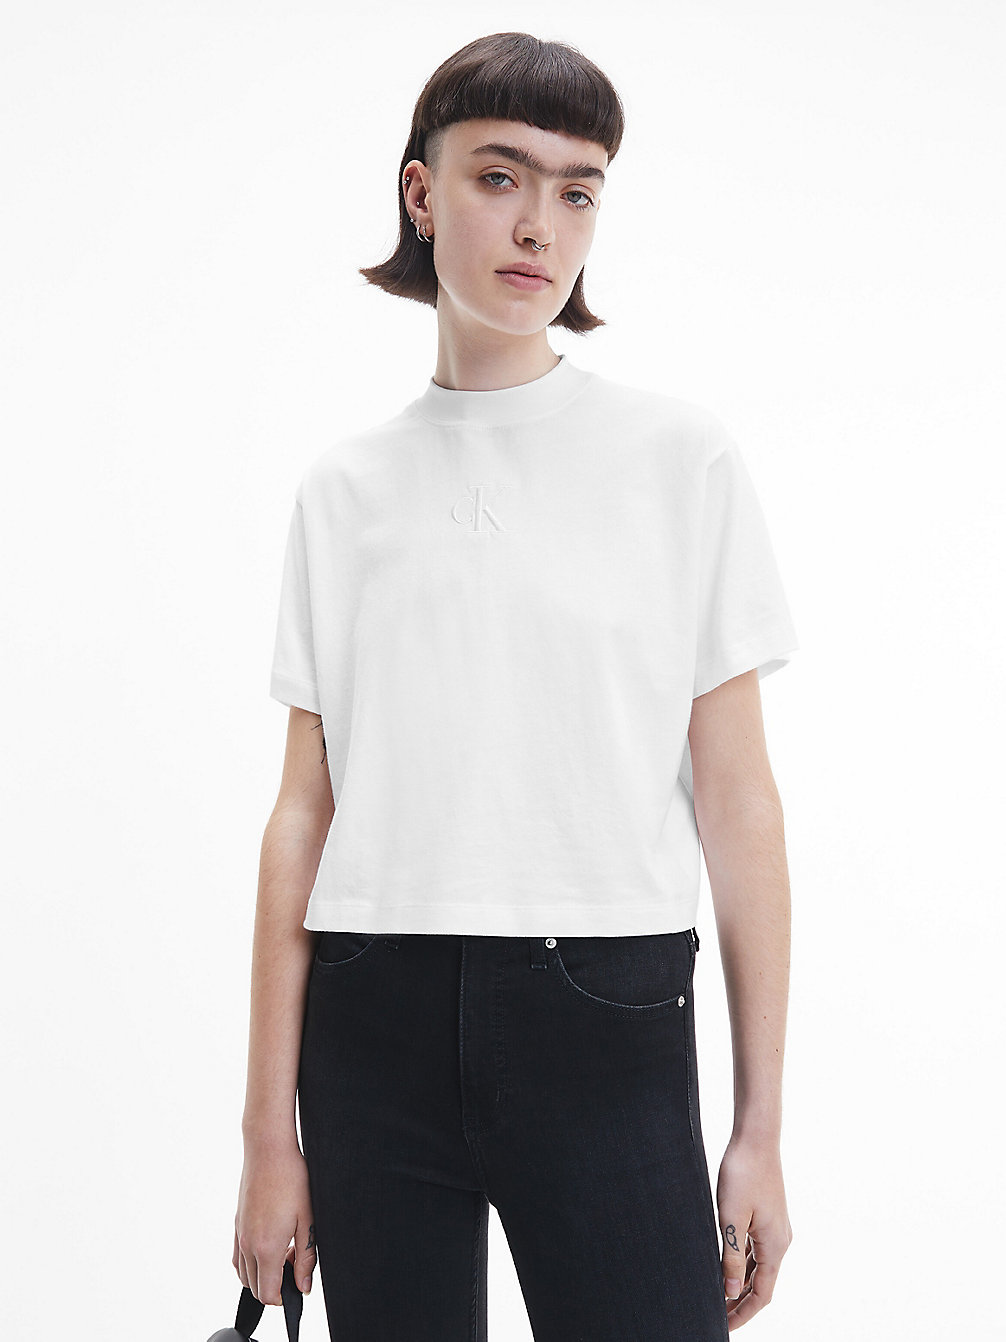 BRIGHT WHITE > Luźny T-Shirt > undefined Kobiety - Calvin Klein